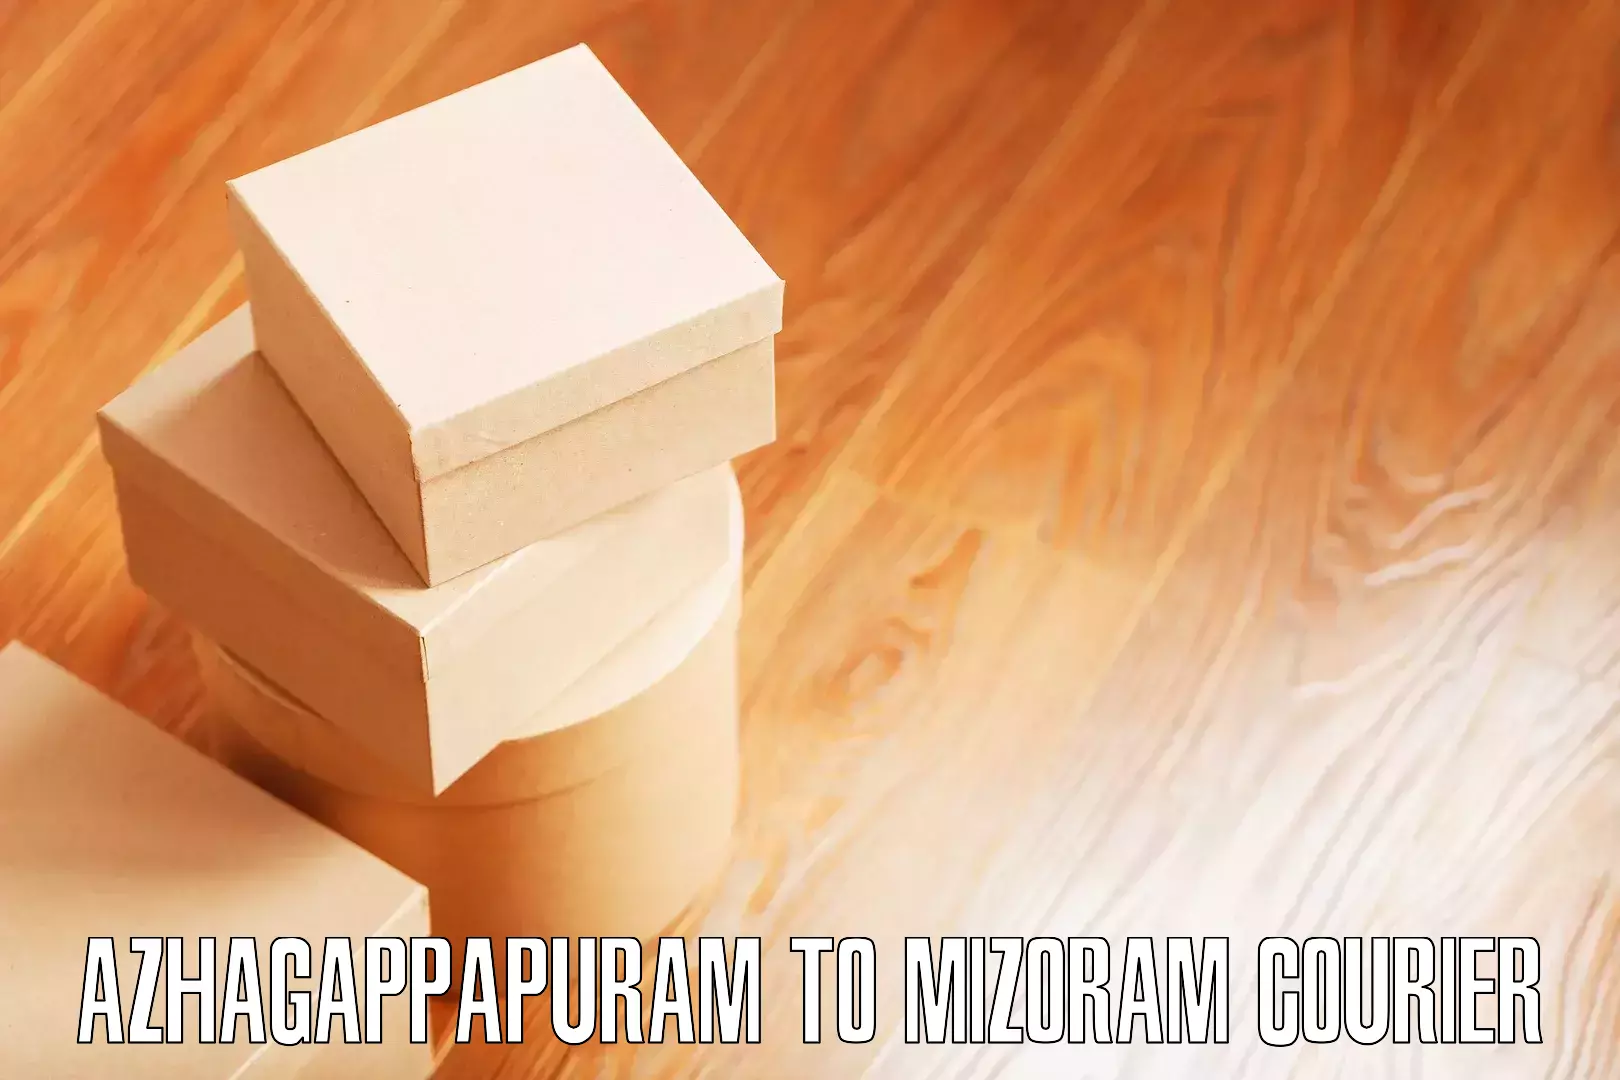 Professional movers and packers Azhagappapuram to Mizoram